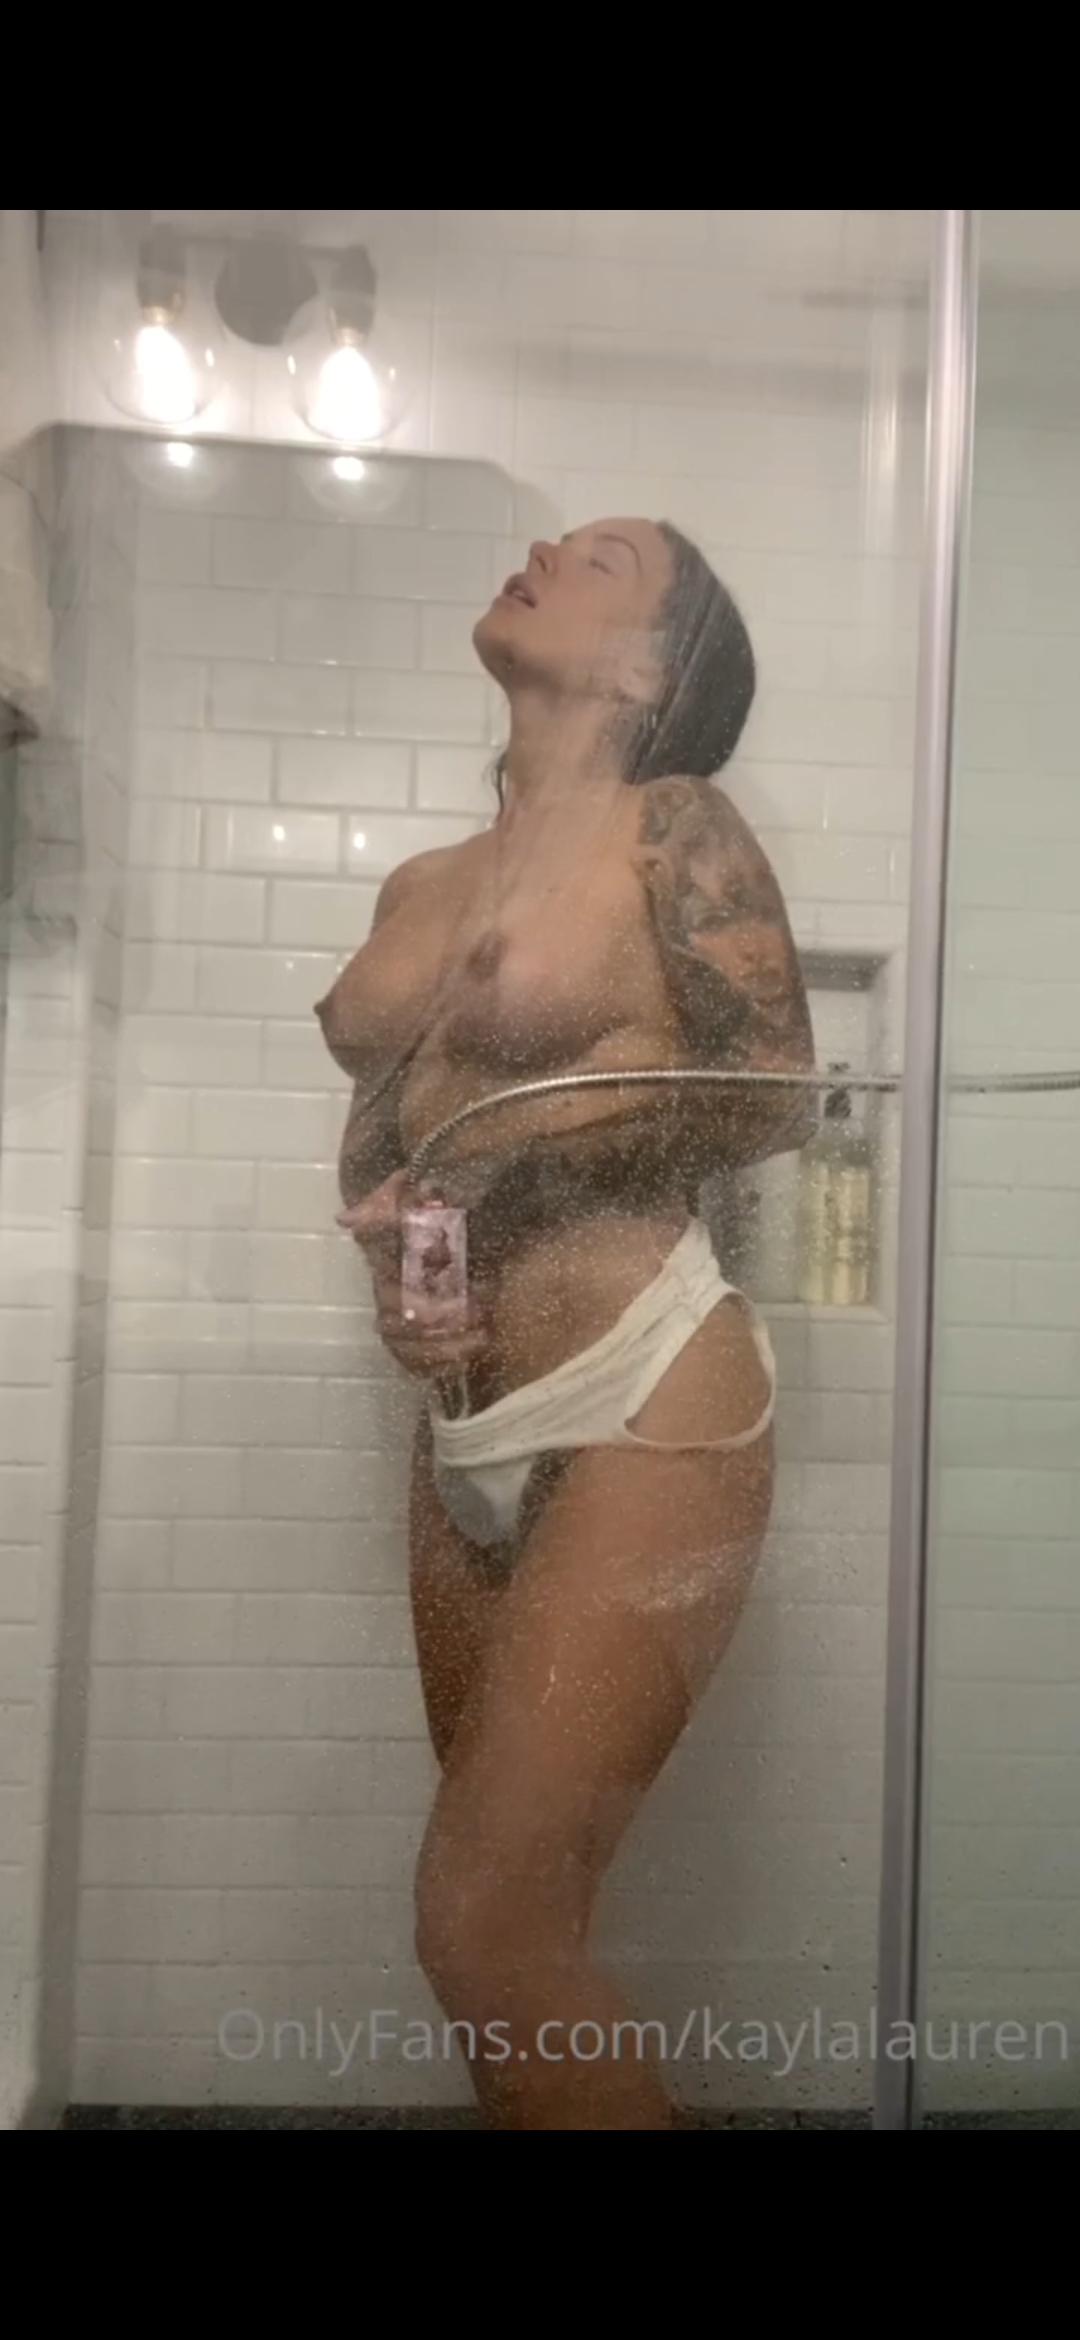 Kayla lauren masturbates on shower